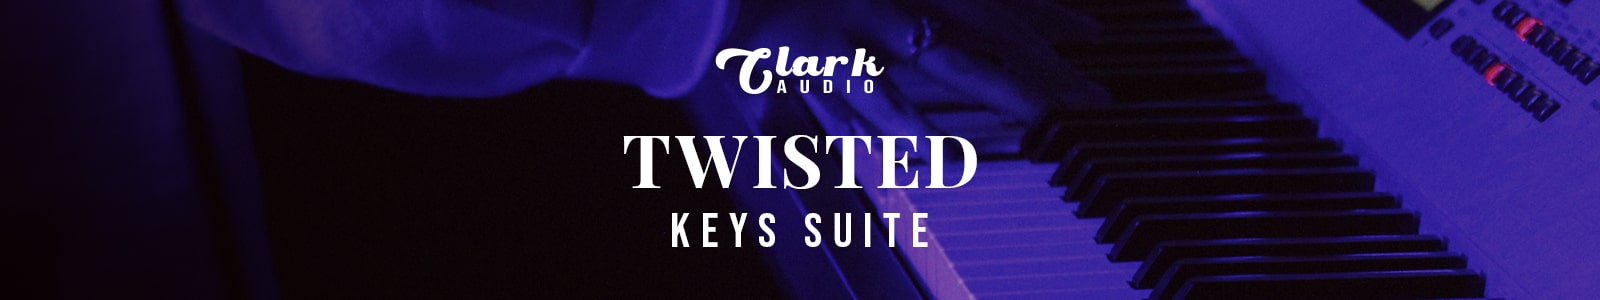 twisted keys suite